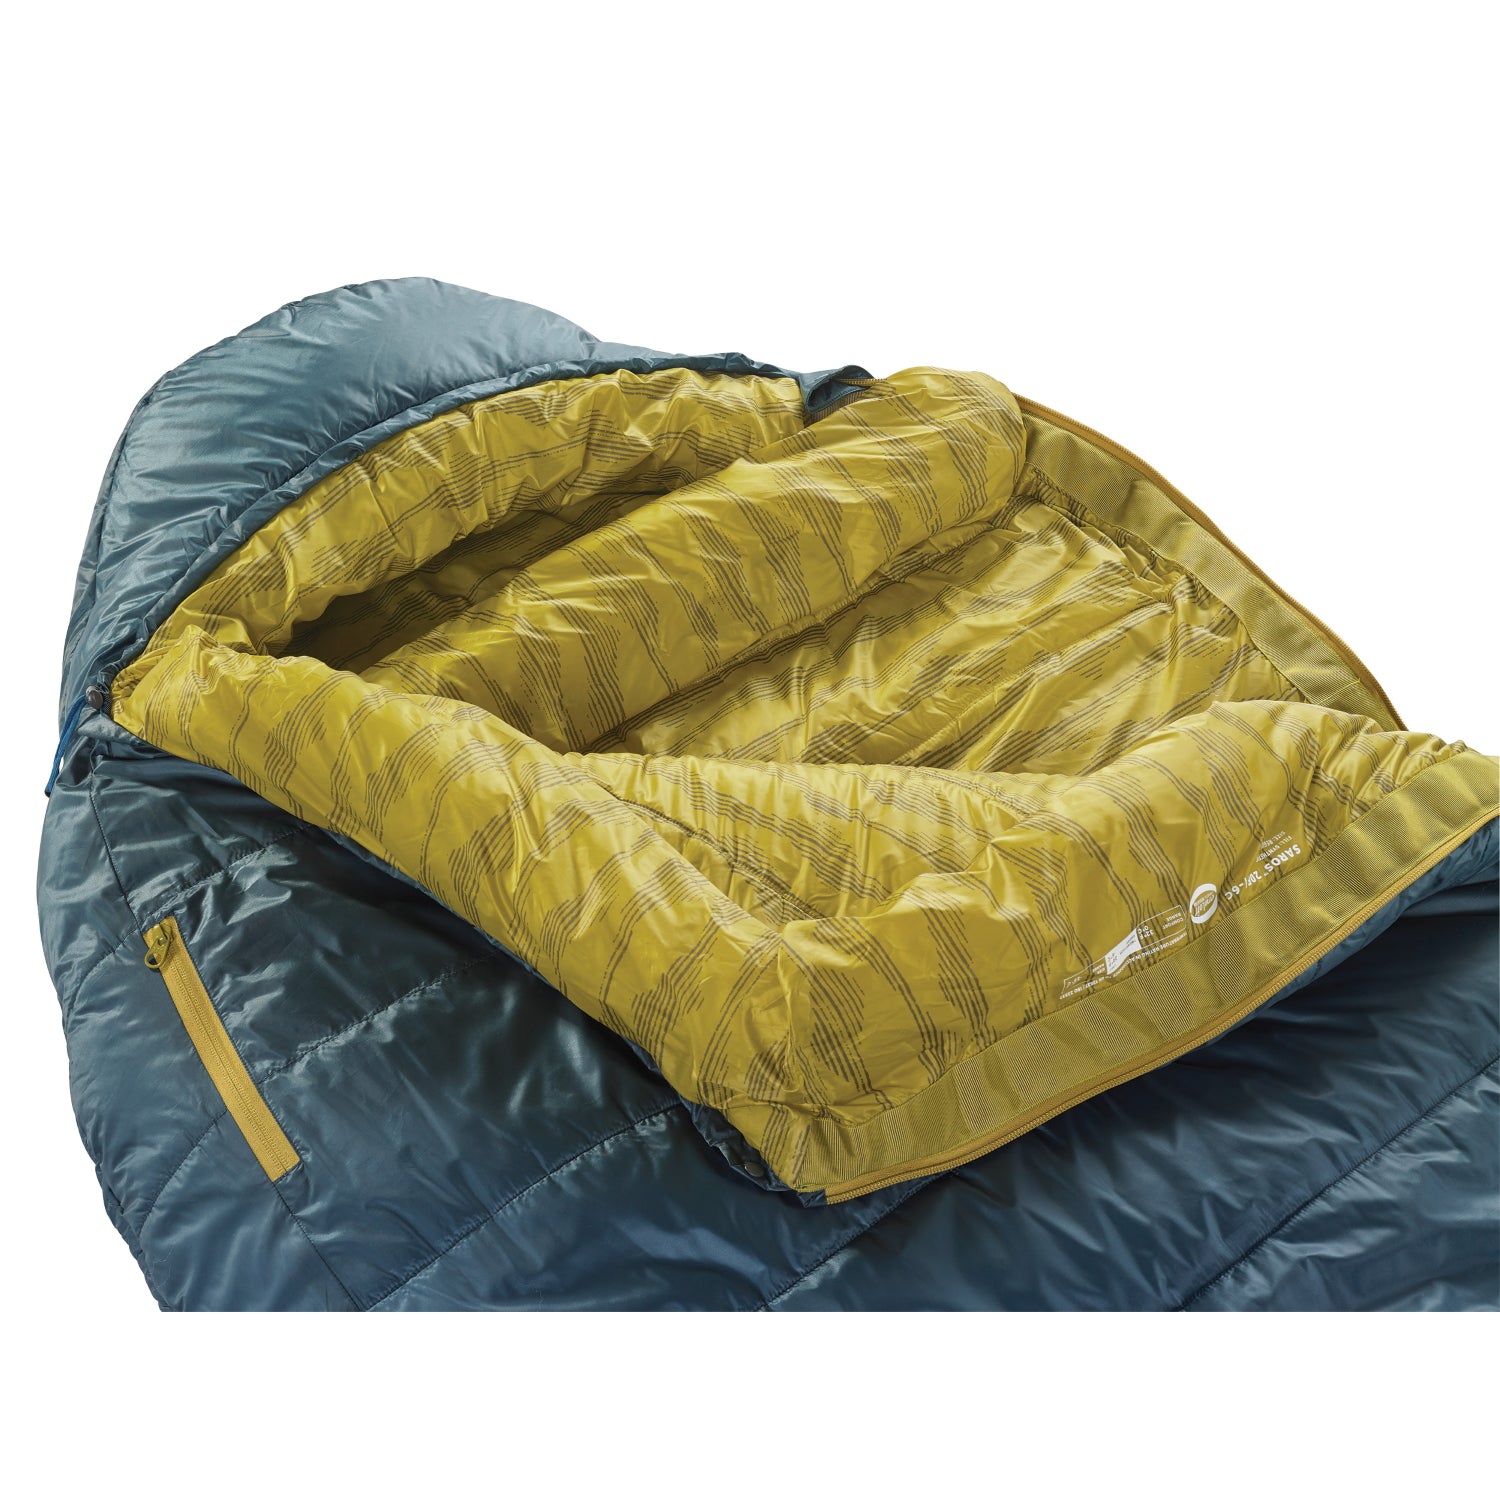 Thermarest Saros 20F/-6c Sleeping Bag  Regular